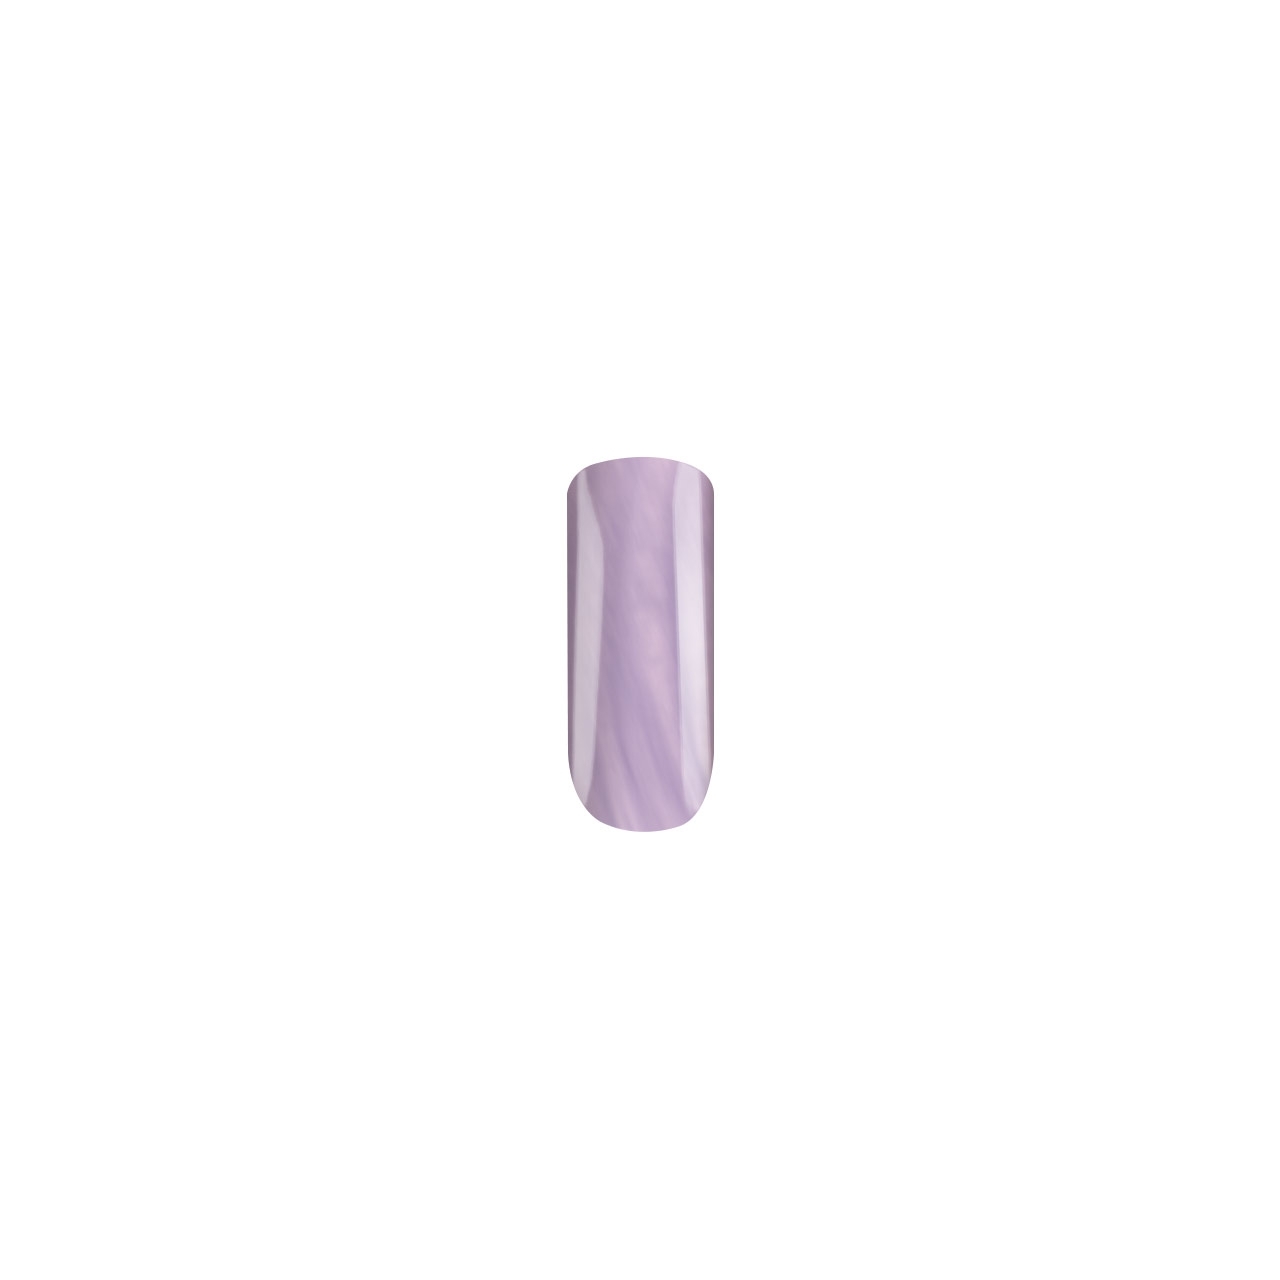 BAEHR BEAUTY CONCEPT - NAILS Nagellack lavender flipflop 11 ml